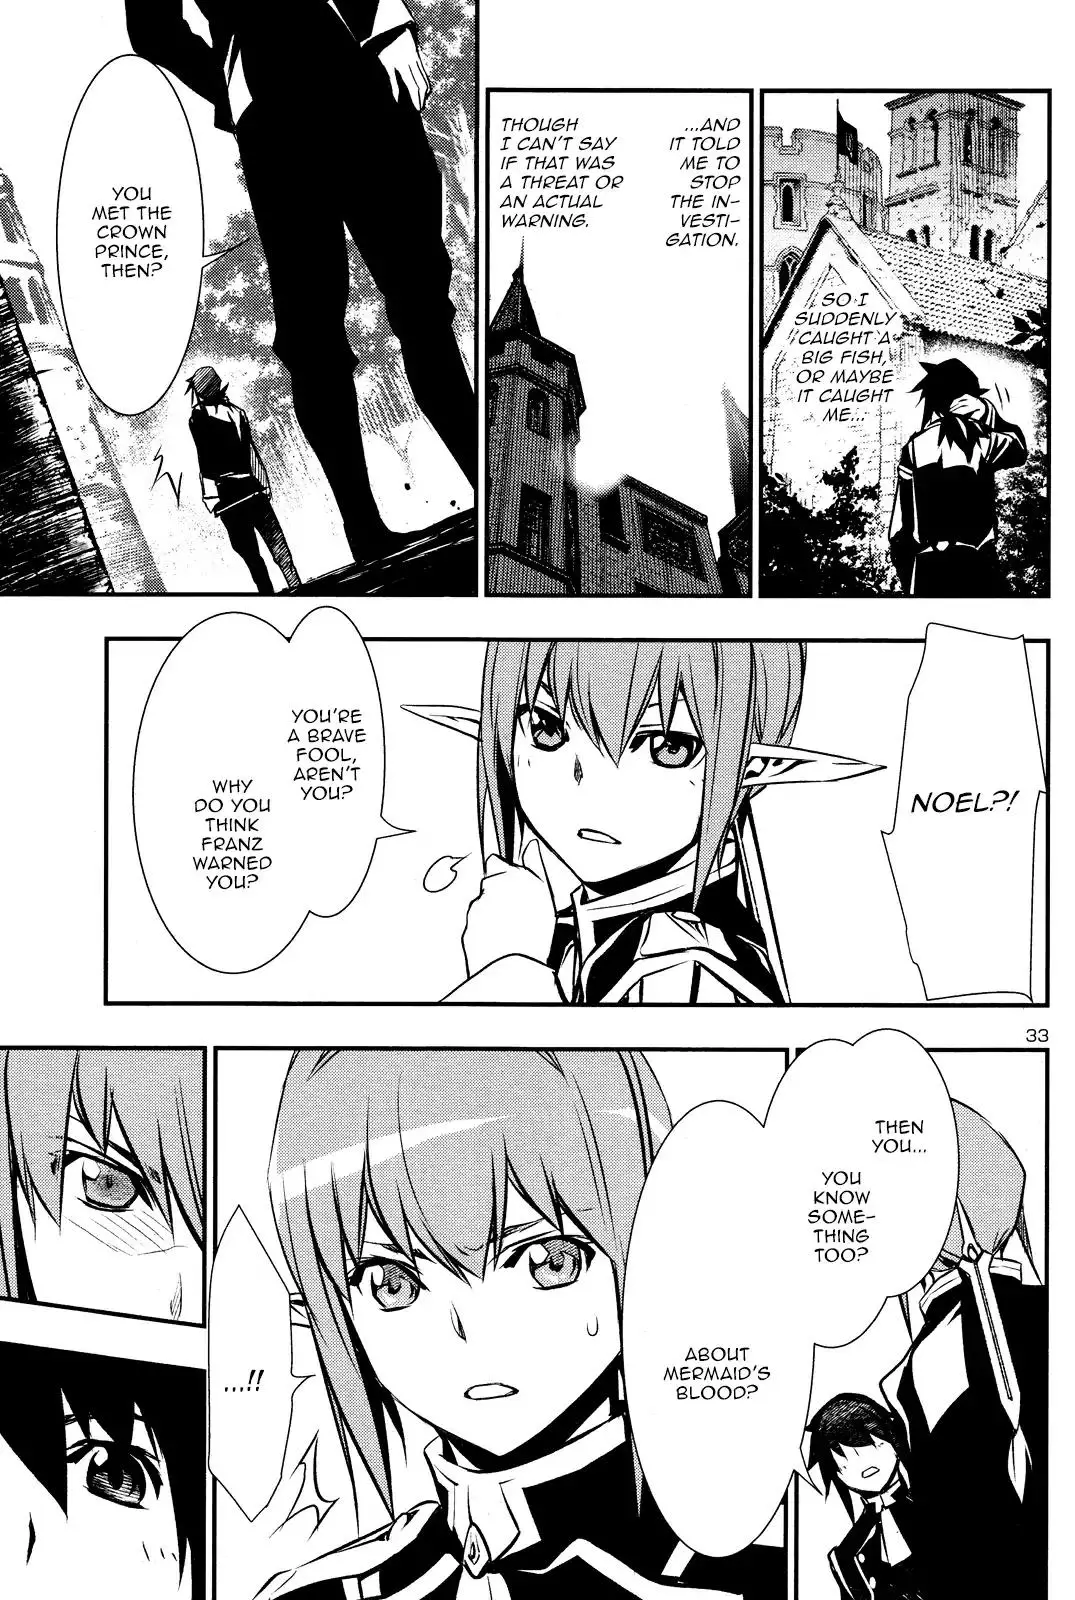 Shinju no Nectar - 31 page 31